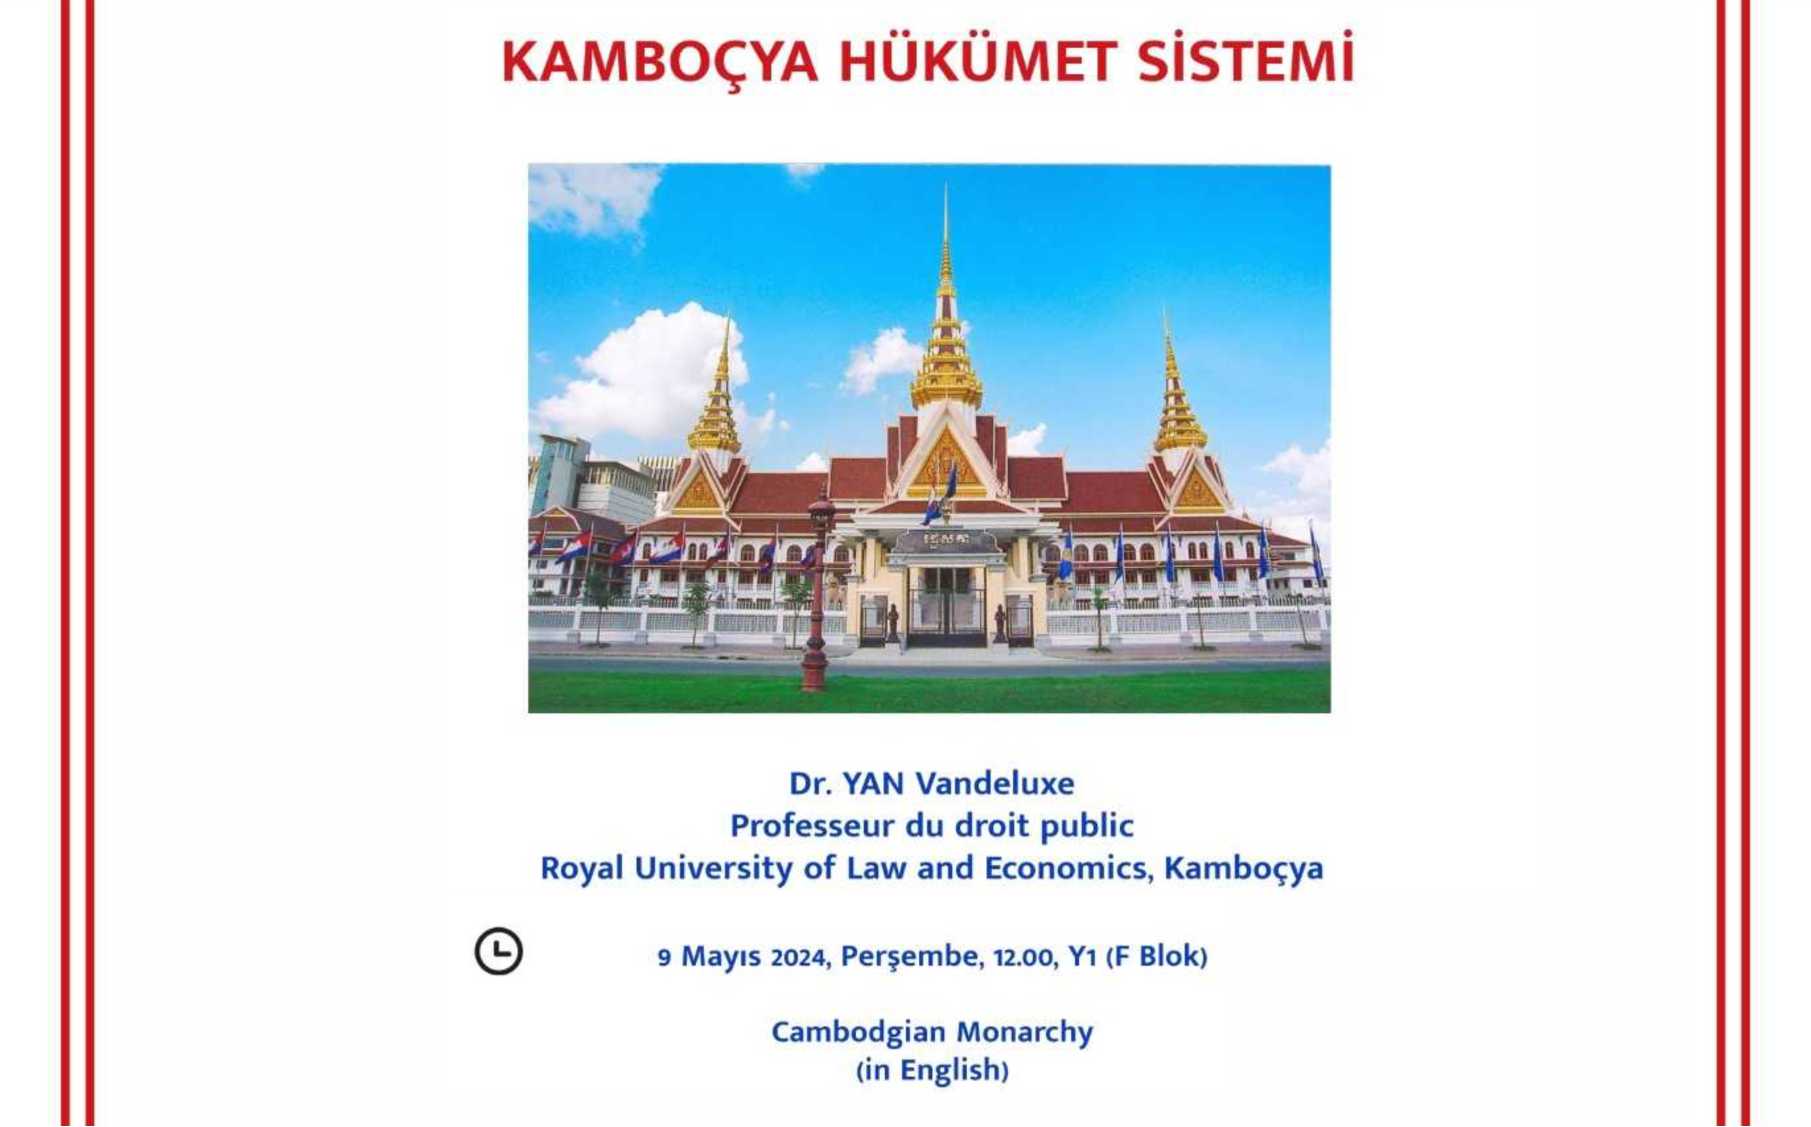 Kamboçya Hükümet Sistemi duyuru görseli